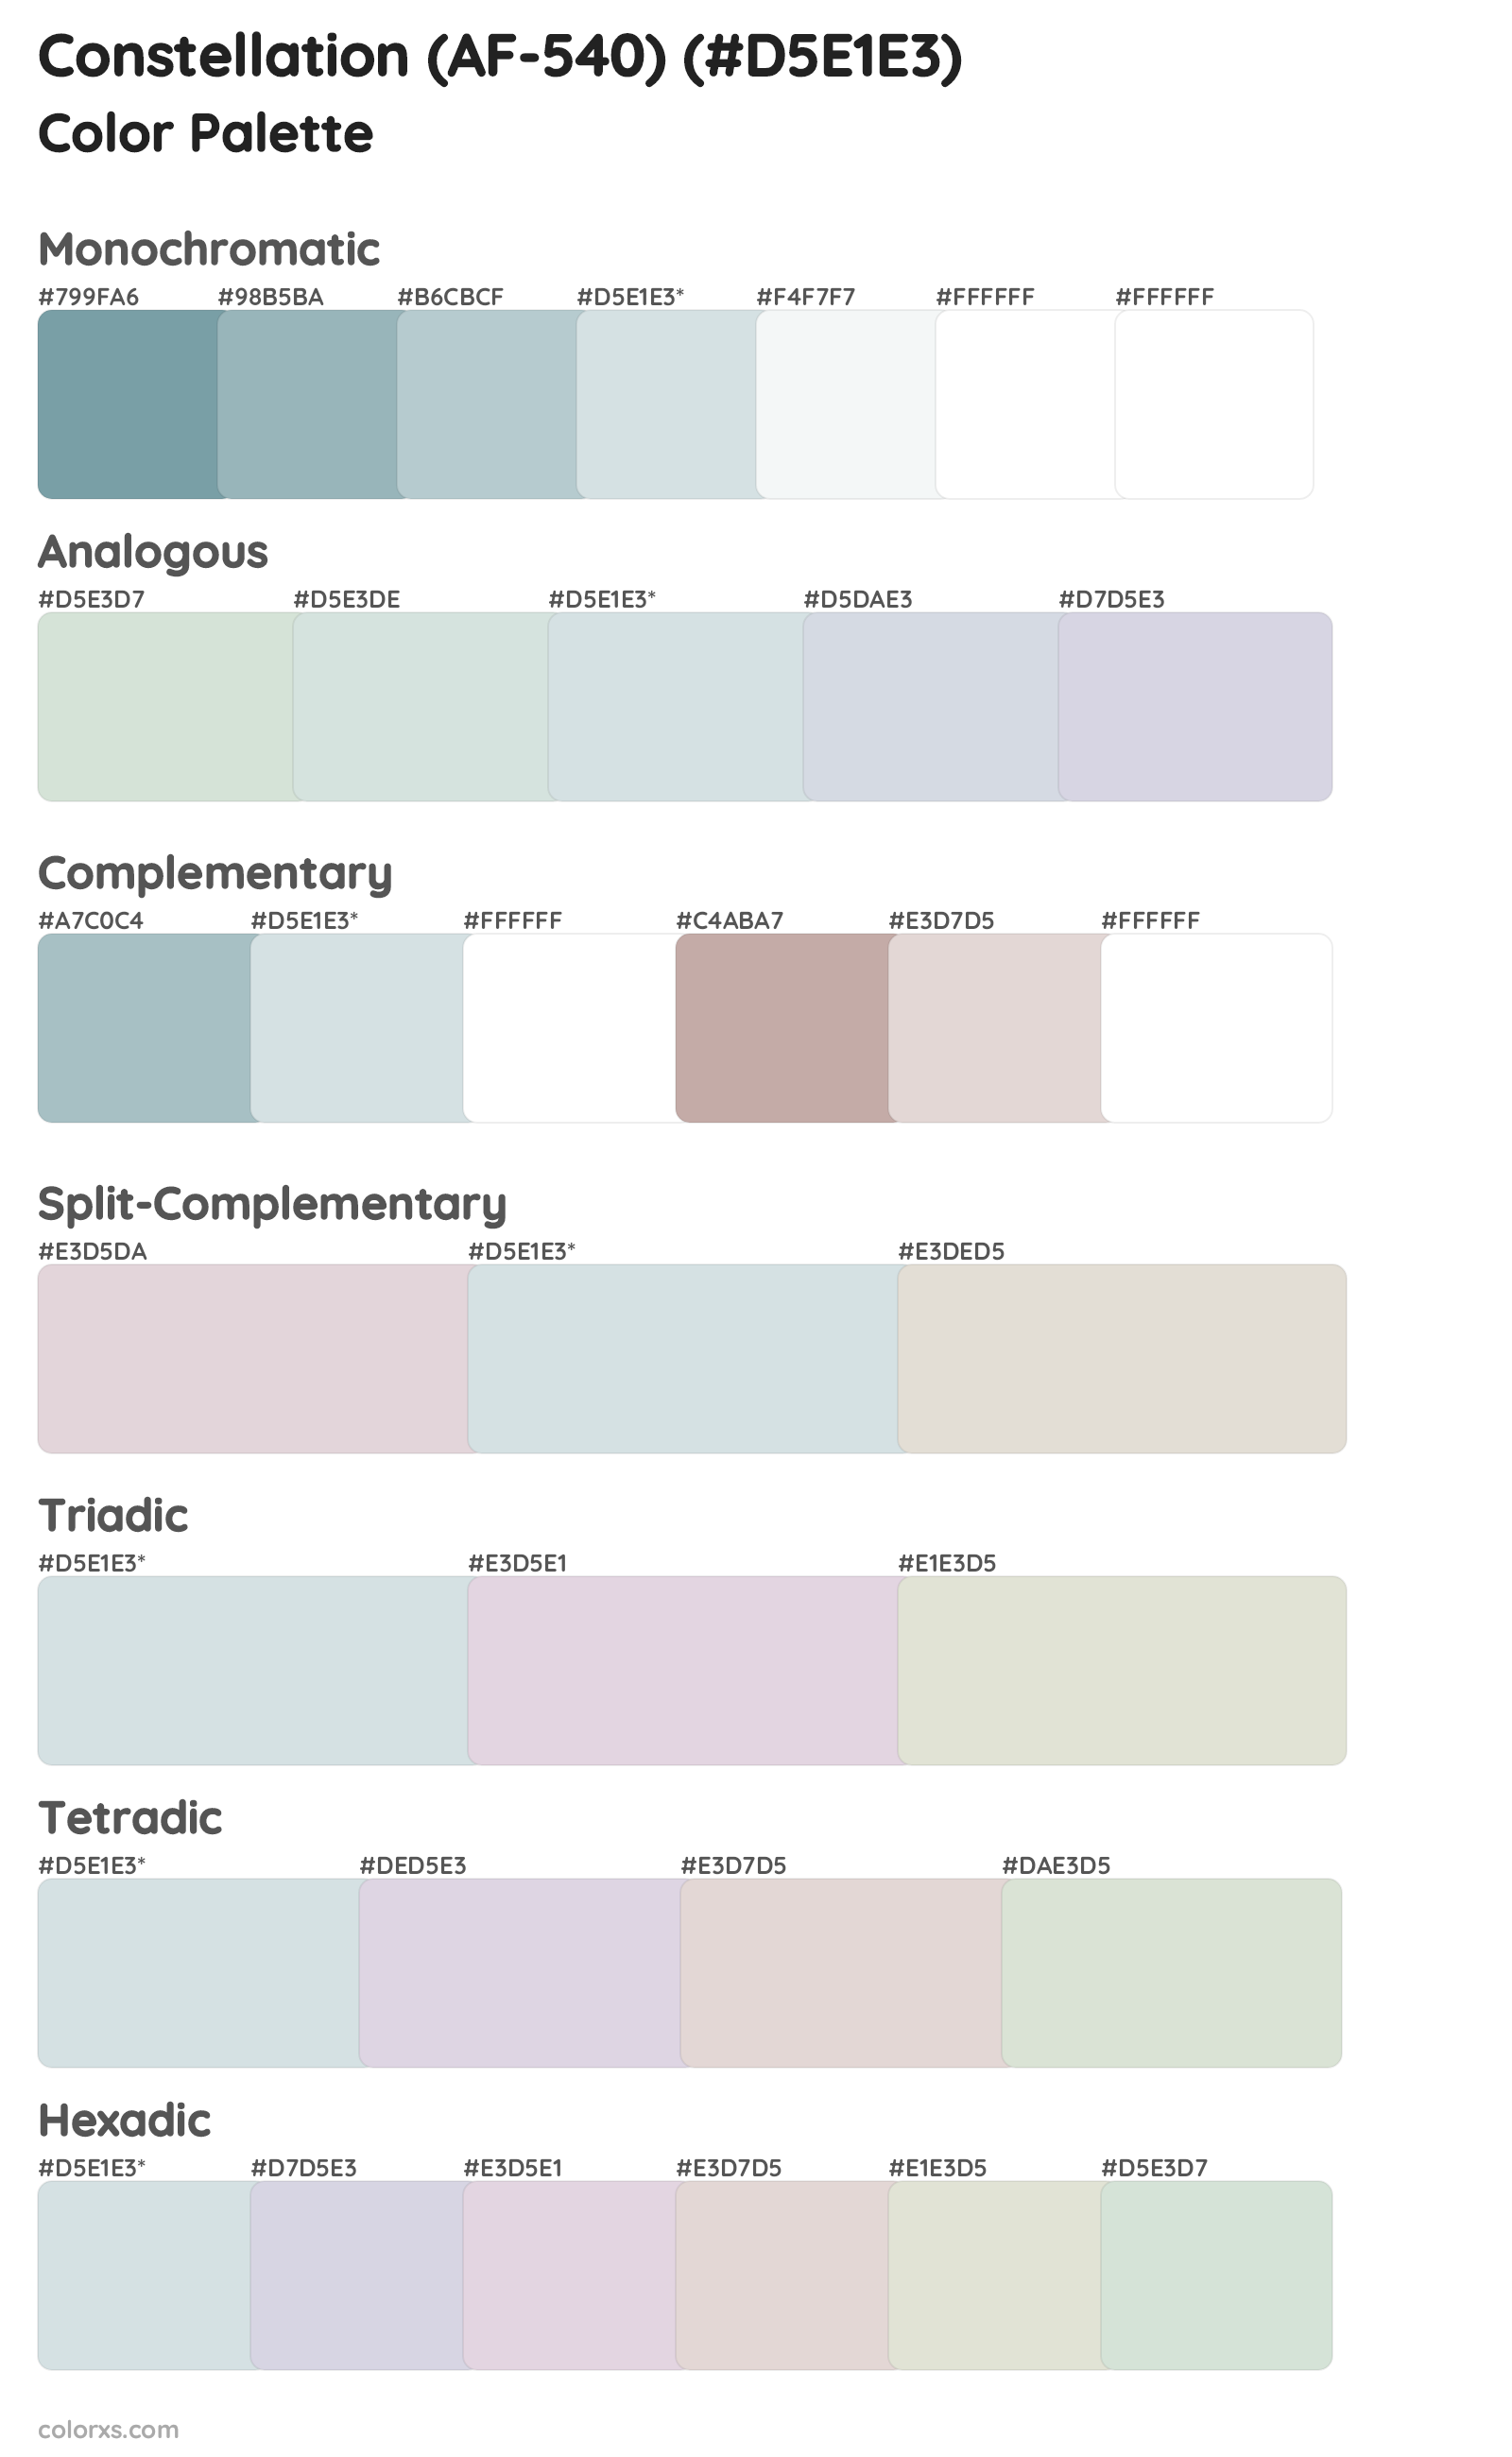 Constellation (AF-540) Color Scheme Palettes